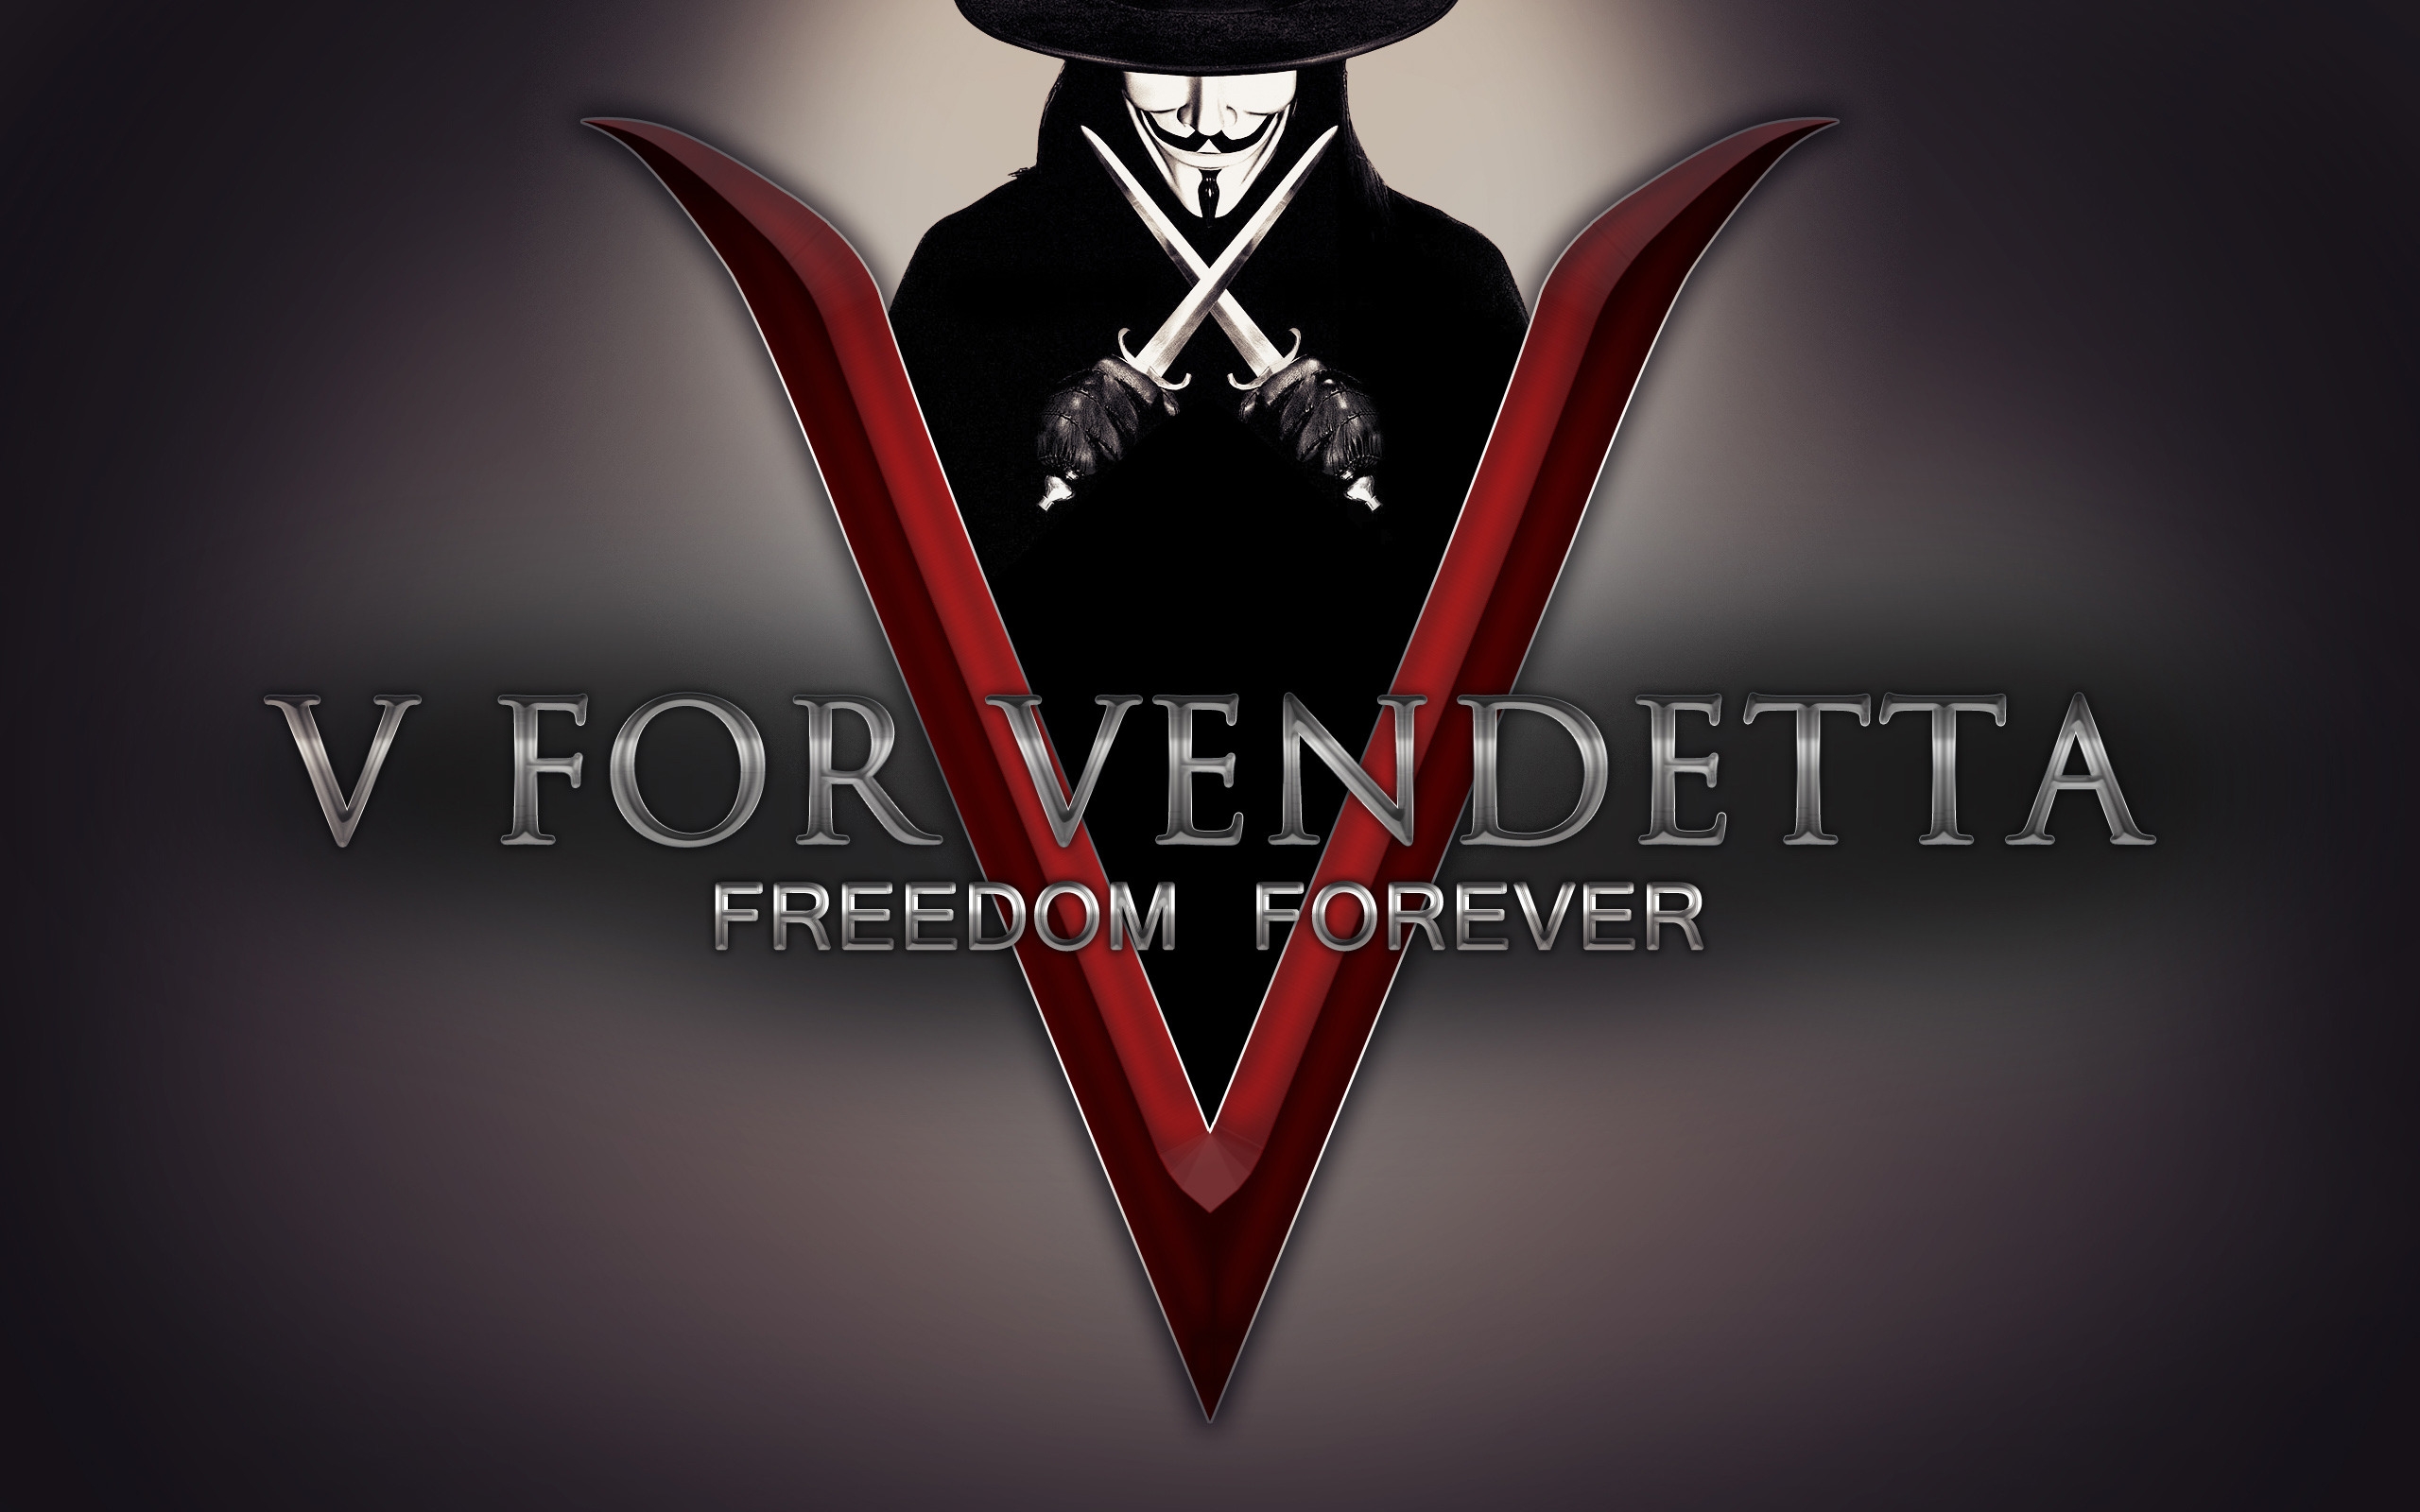 V for Vendetta Freedom Forever for 2560 x 1600 widescreen resolution